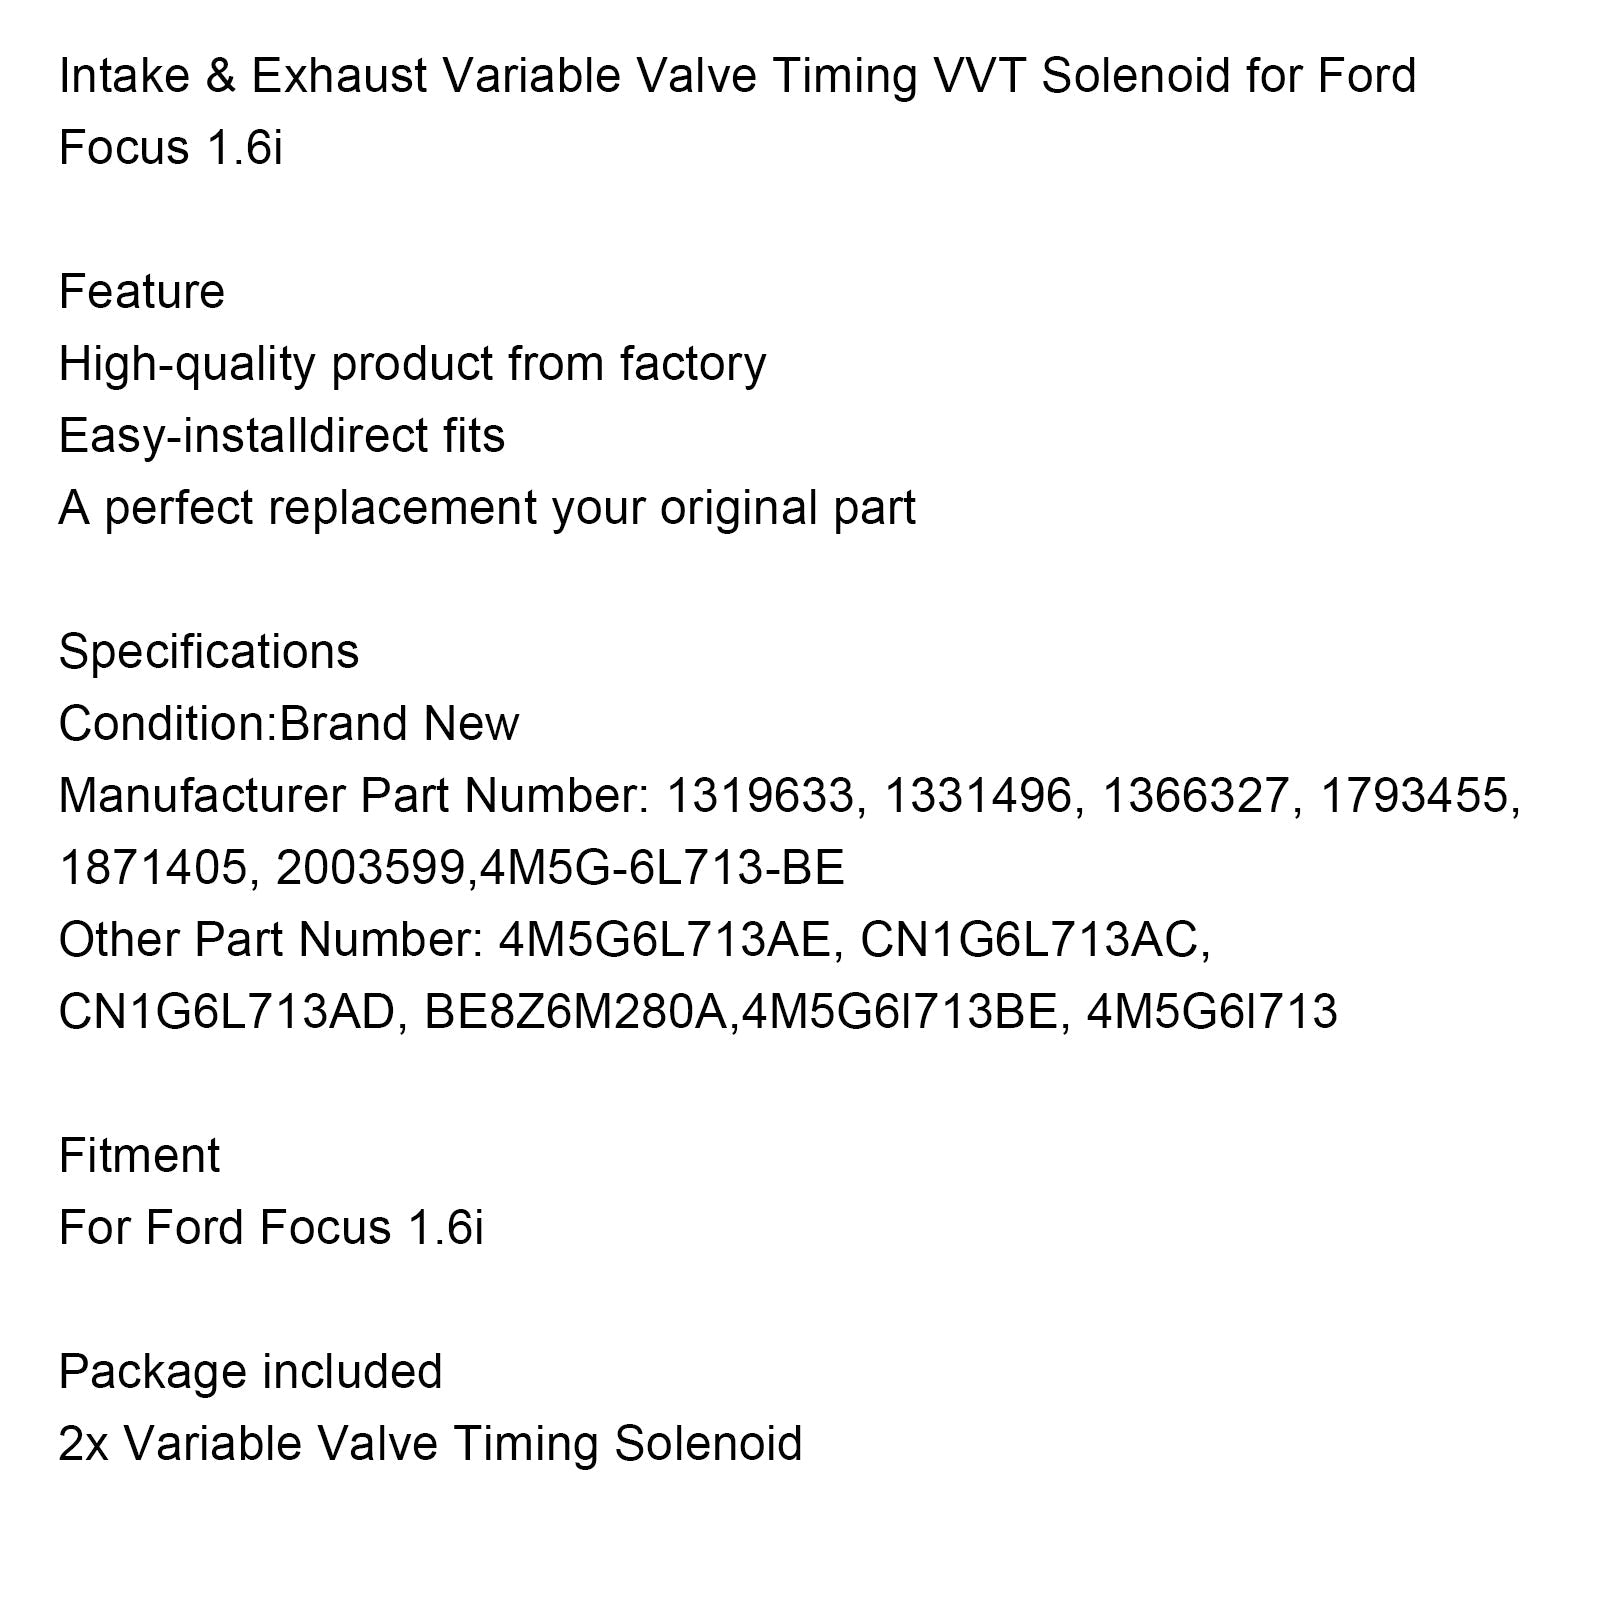 Ford Focus 1.6i Solenoide VVT ​​de sincronización variable de válvulas de admisión y escape